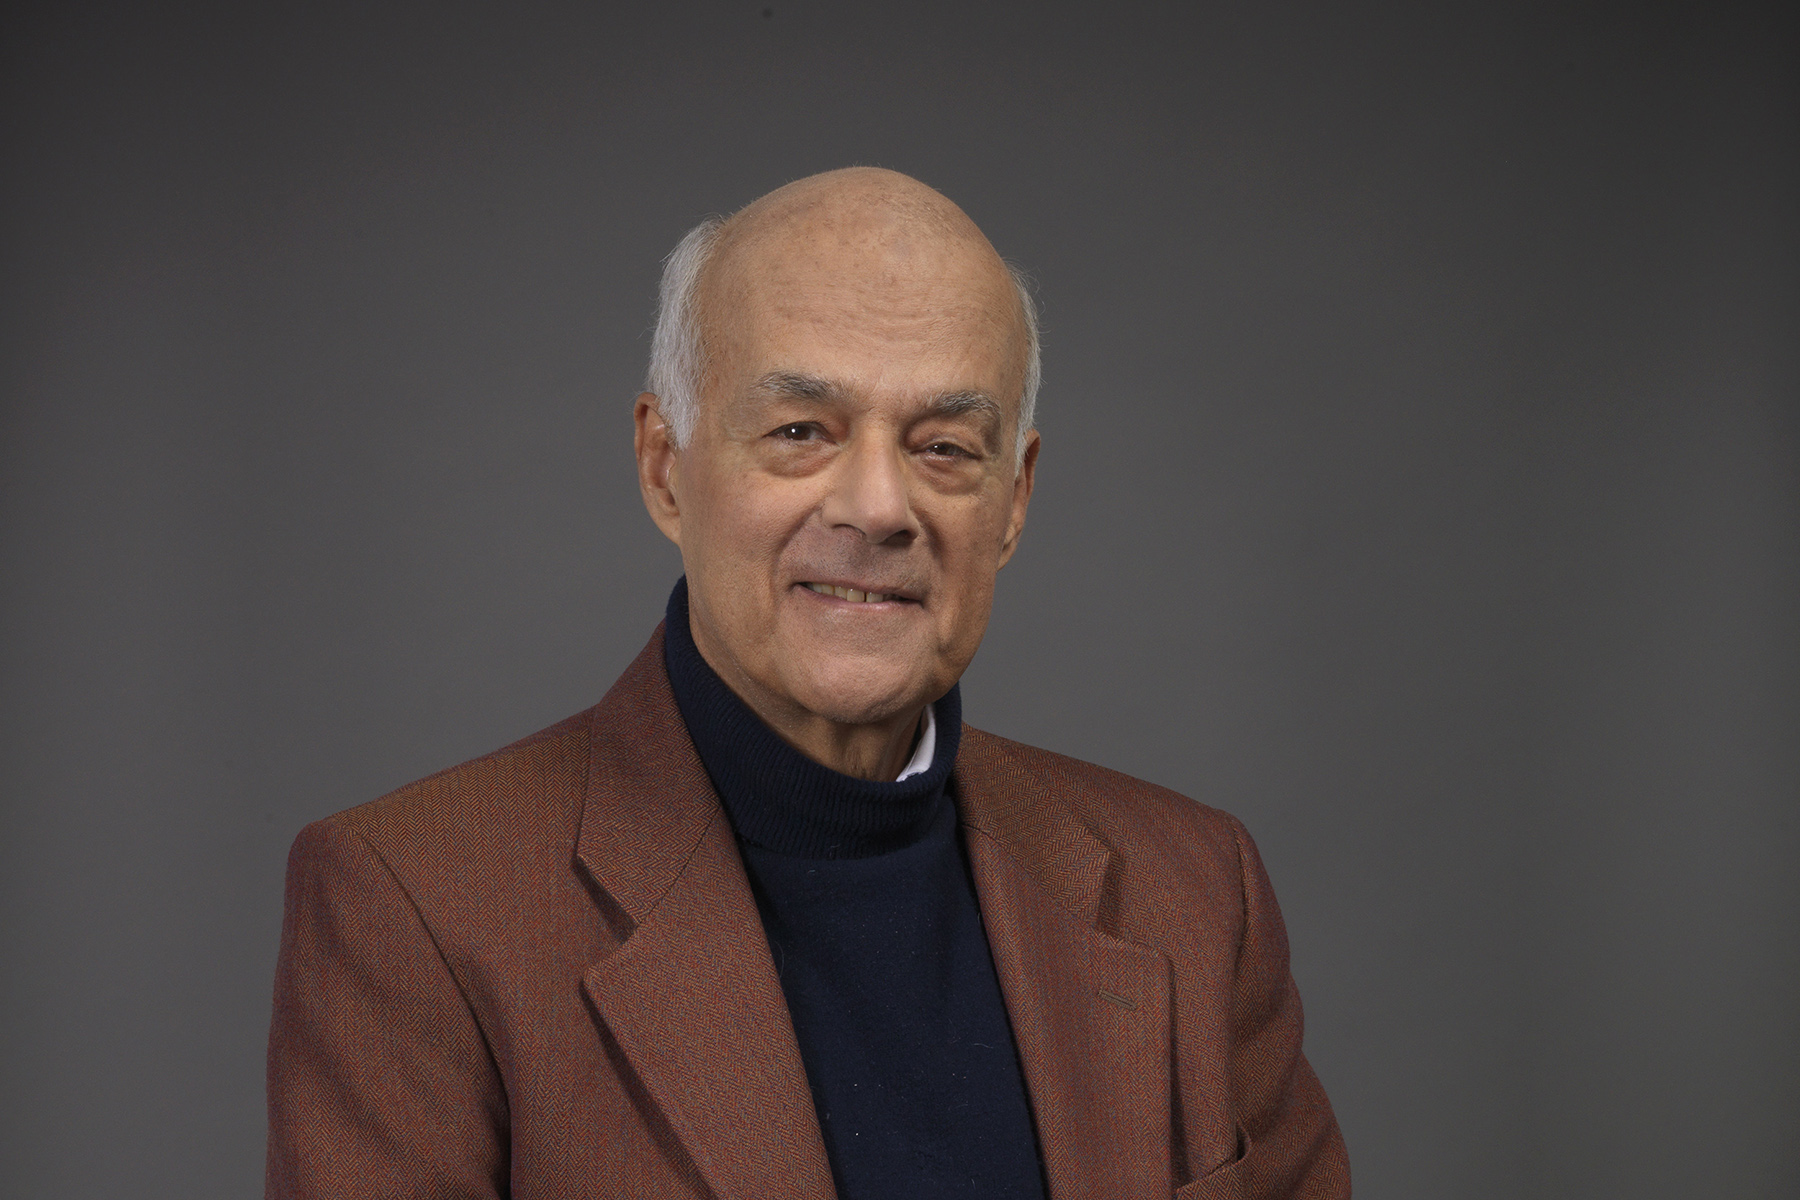 imagen Joseph Ramos, economista: “Para mí estar trabajando a los 82 años es un privilegio”